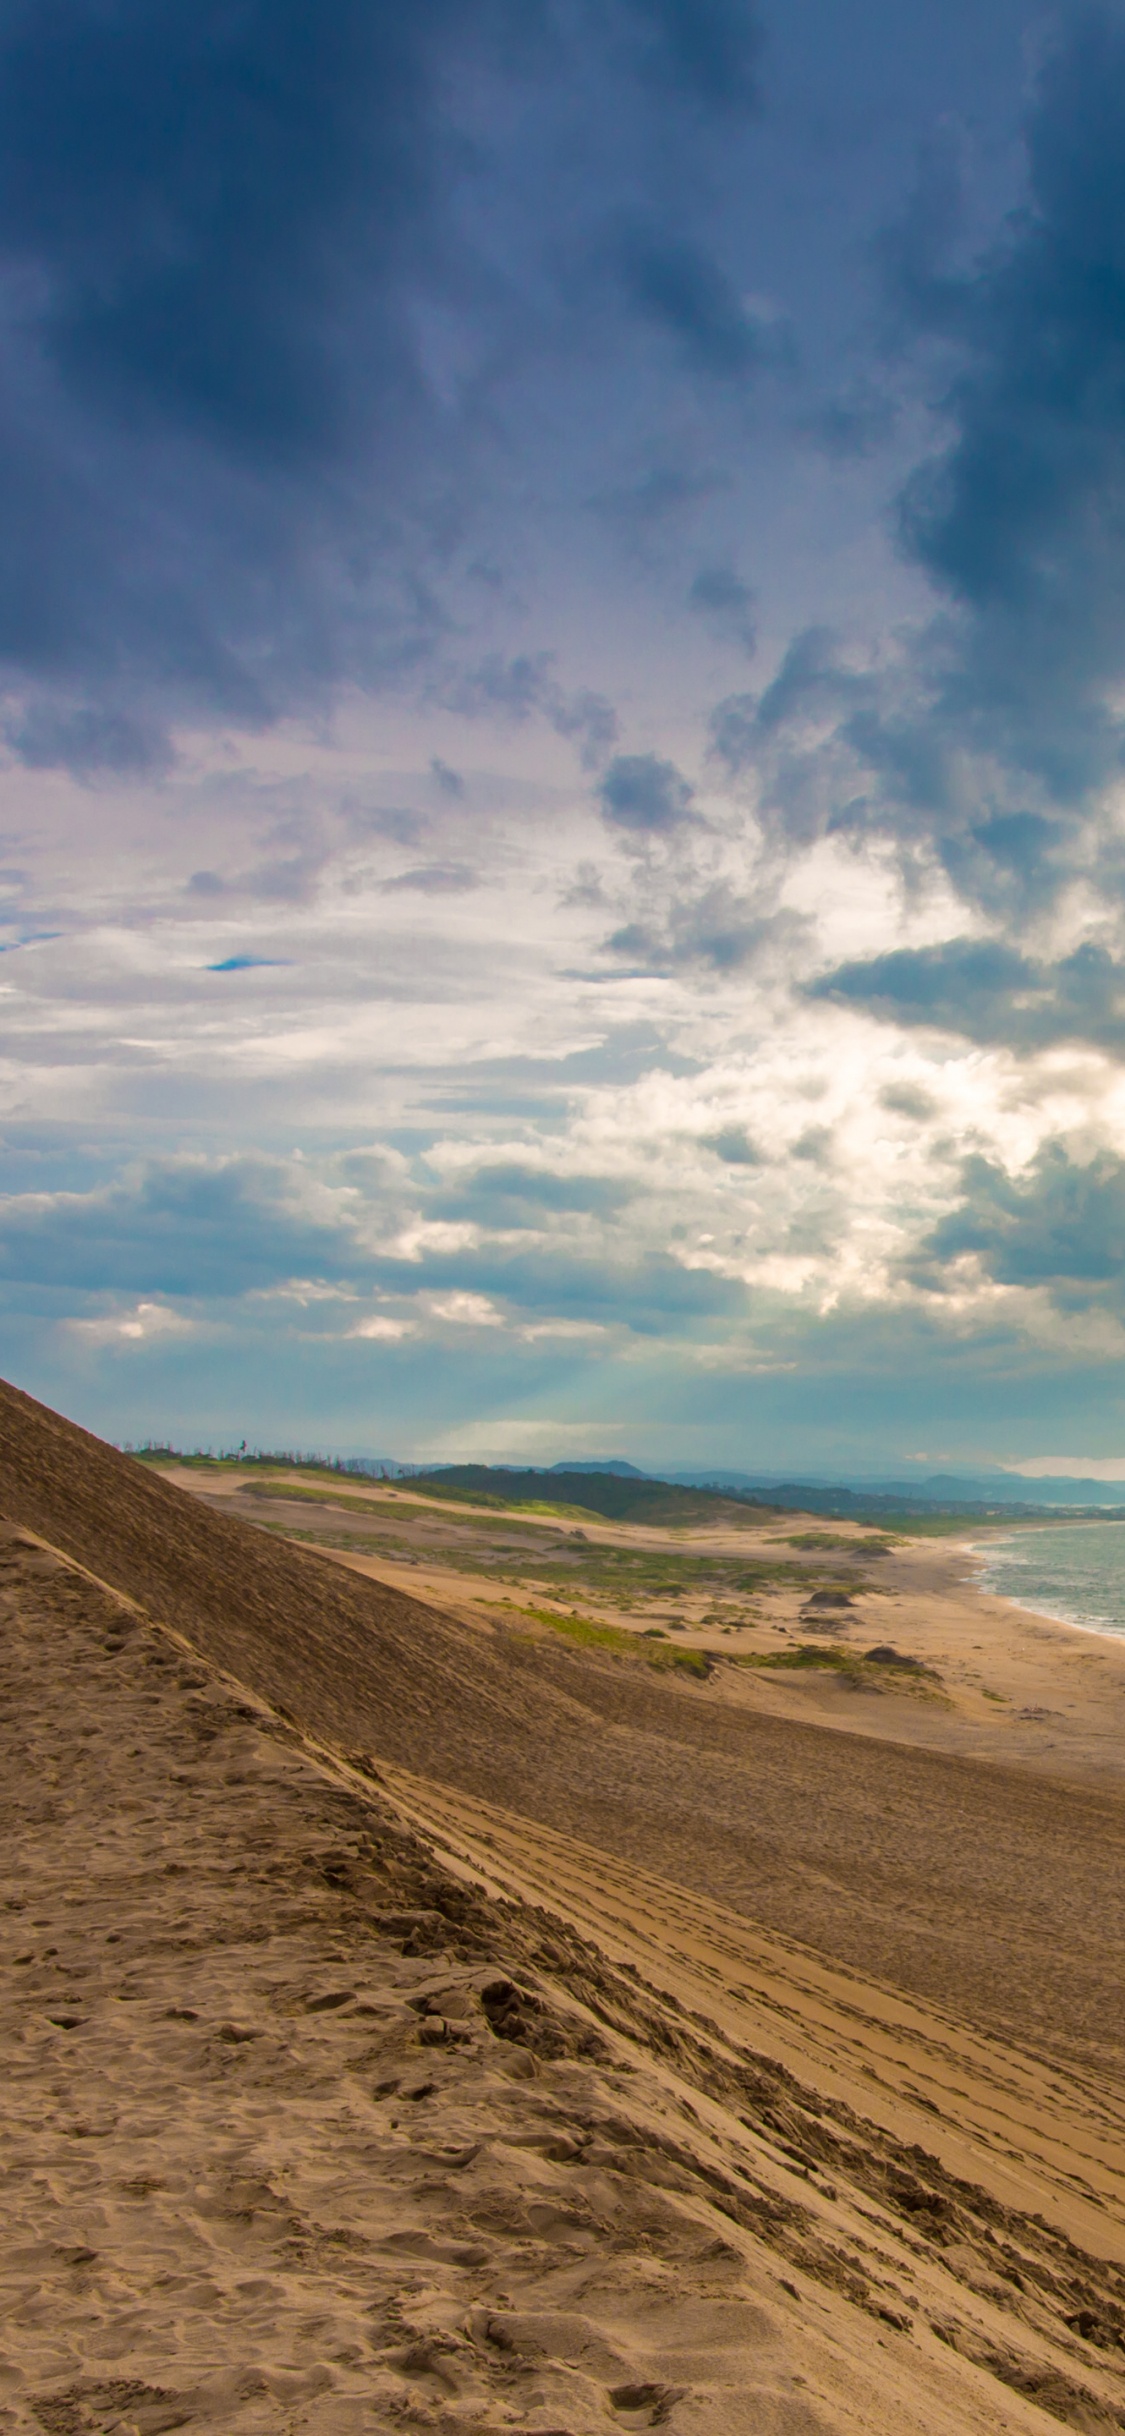 Brauner Sand in Der Nähe Von Gewässern Unter Blauem Himmel Und Weißen Wolken Tagsüber. Wallpaper in 1125x2436 Resolution